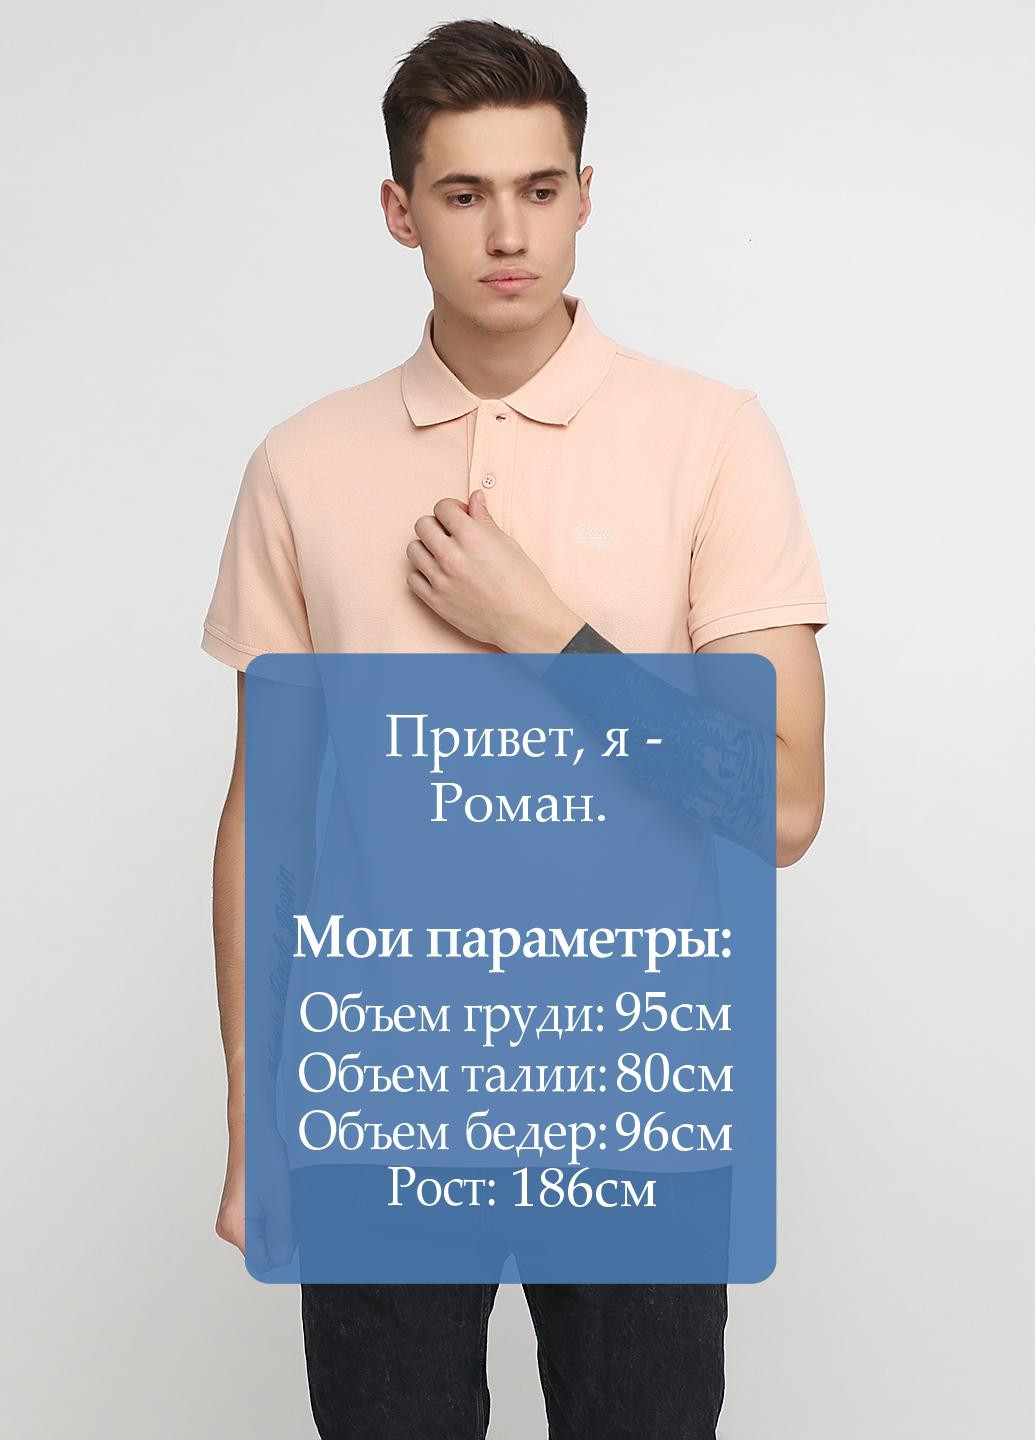 Персиковая футболка-поло для мужчин Blend однотонная